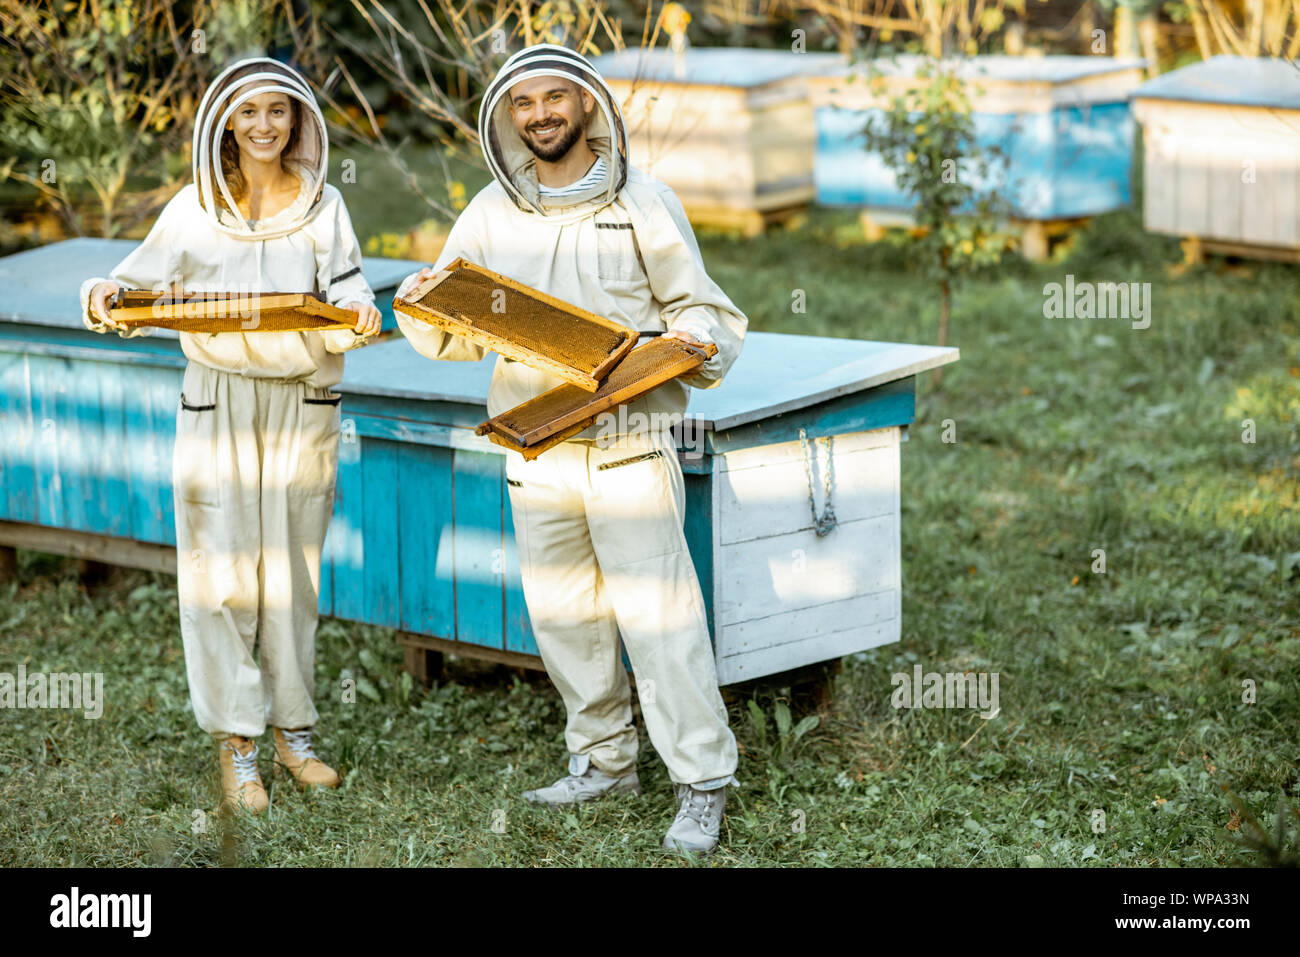 Dos apicultores en uniforme de protección caminando con panales, mientras trabajaba en un apiario tradicionales. Concepto de apicultura y pequeña agricultura Foto de stock